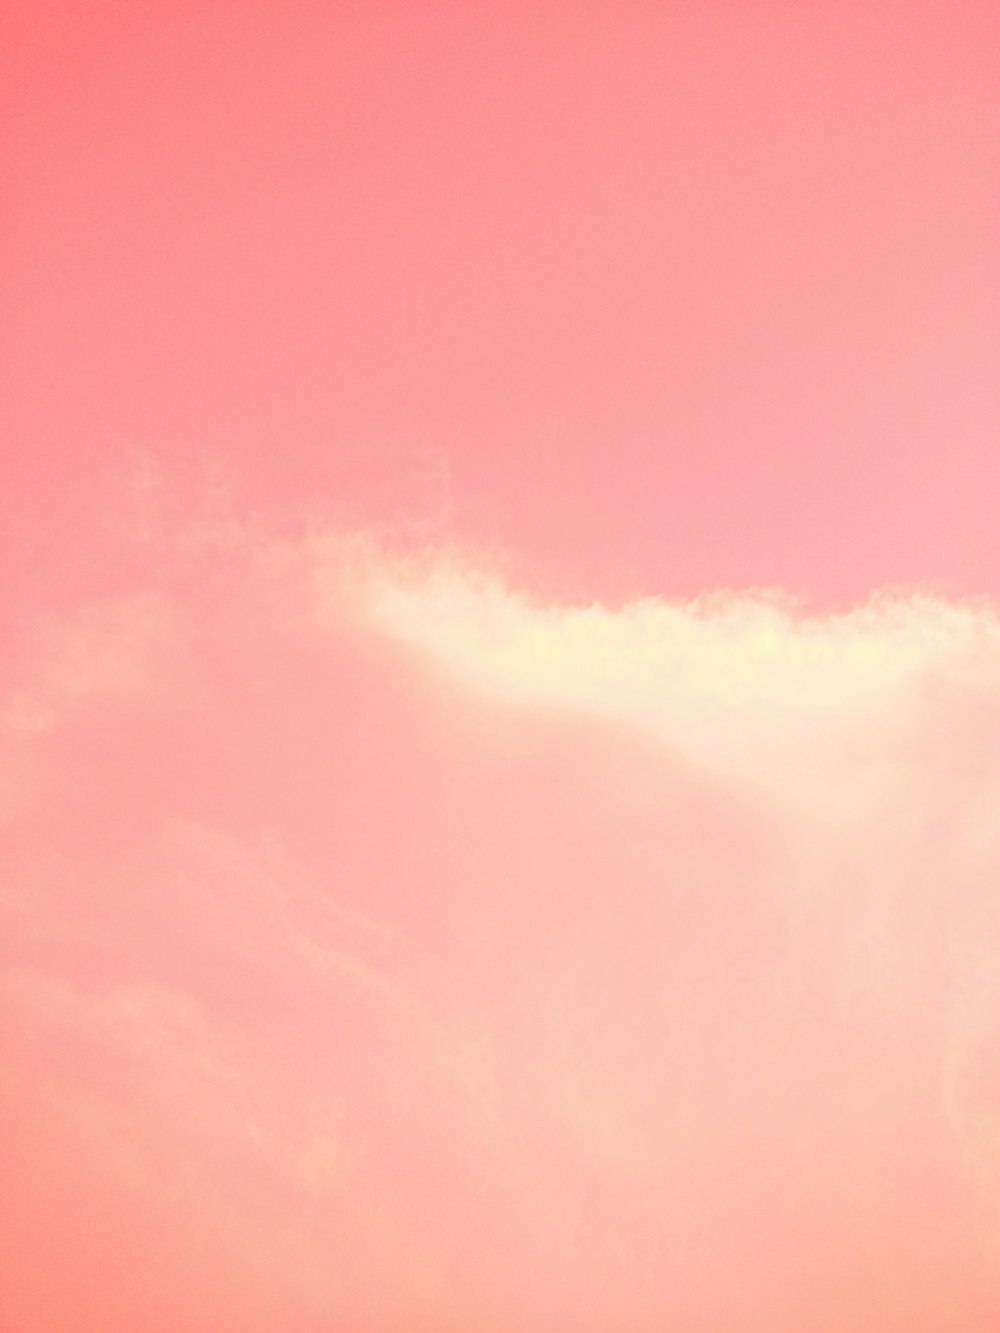 cielo nublado rosa y azul